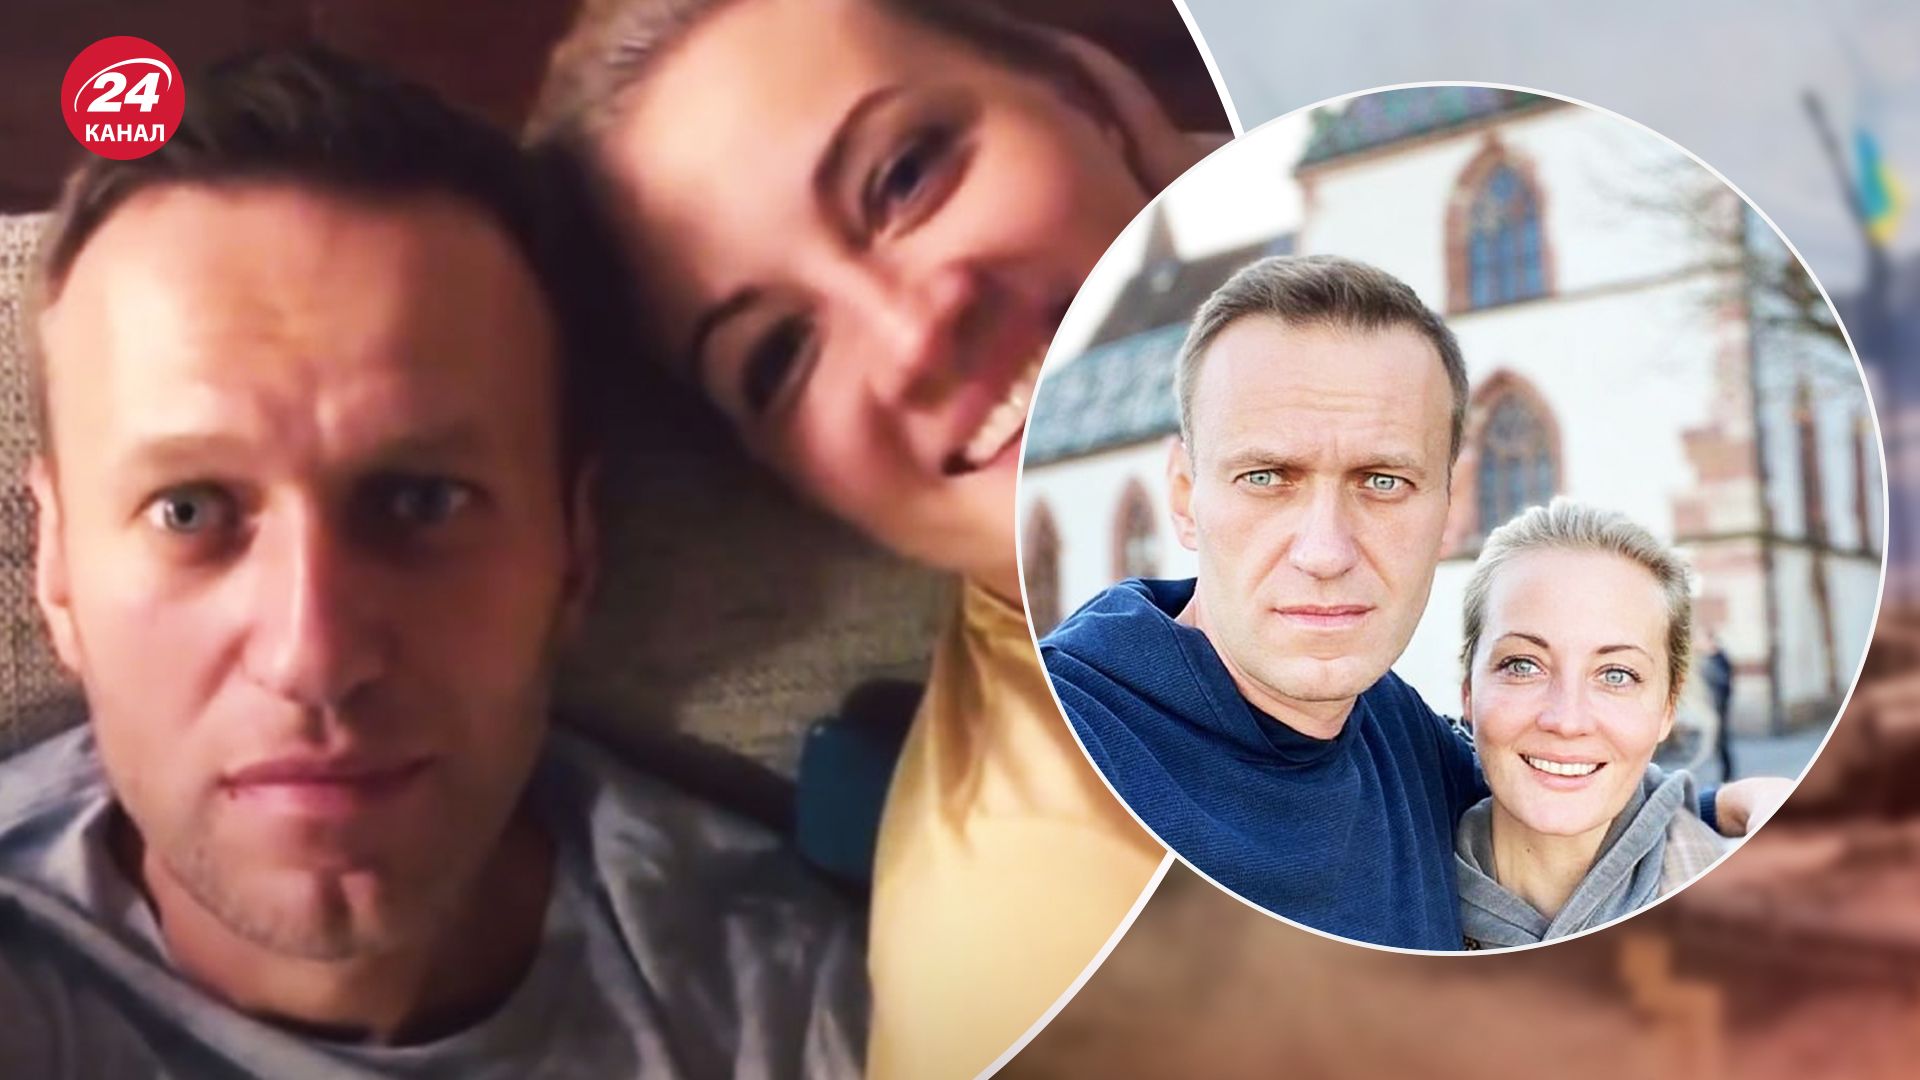 Юлии Навальной не было на похоронах, смотрите ролик Юлии Навальной об Алексее Навальном на 24 Канале